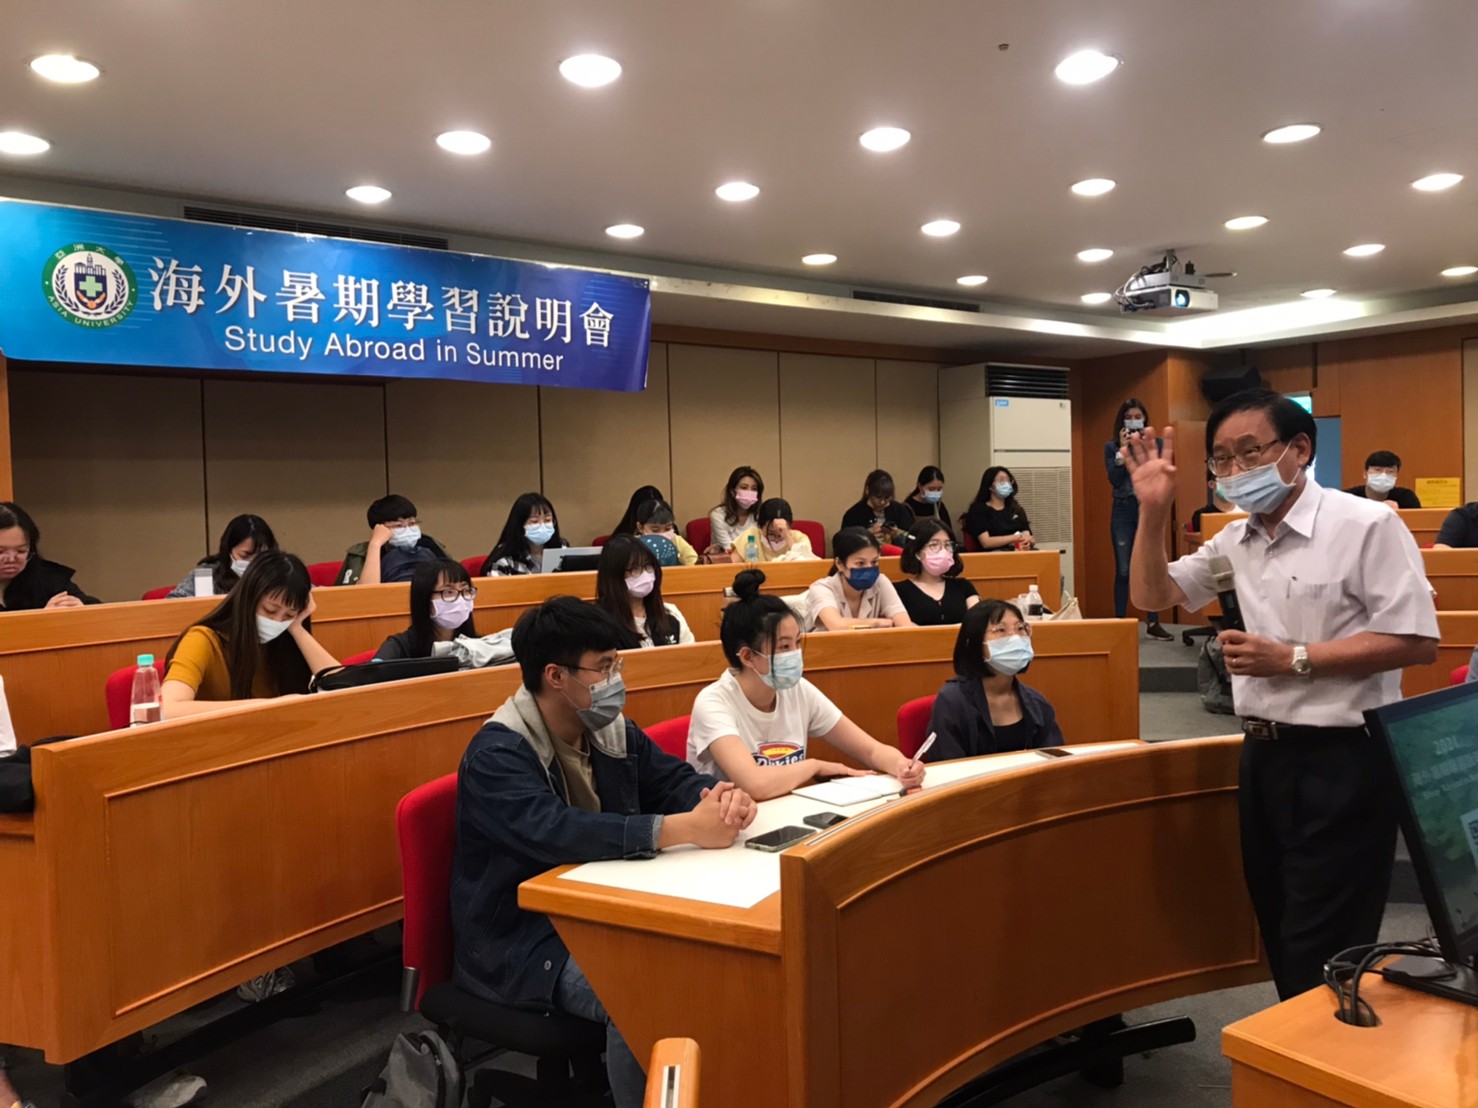 亞大國際學院院長陳英輝（右一），與學生分享亞大推行的318國際化計畫。